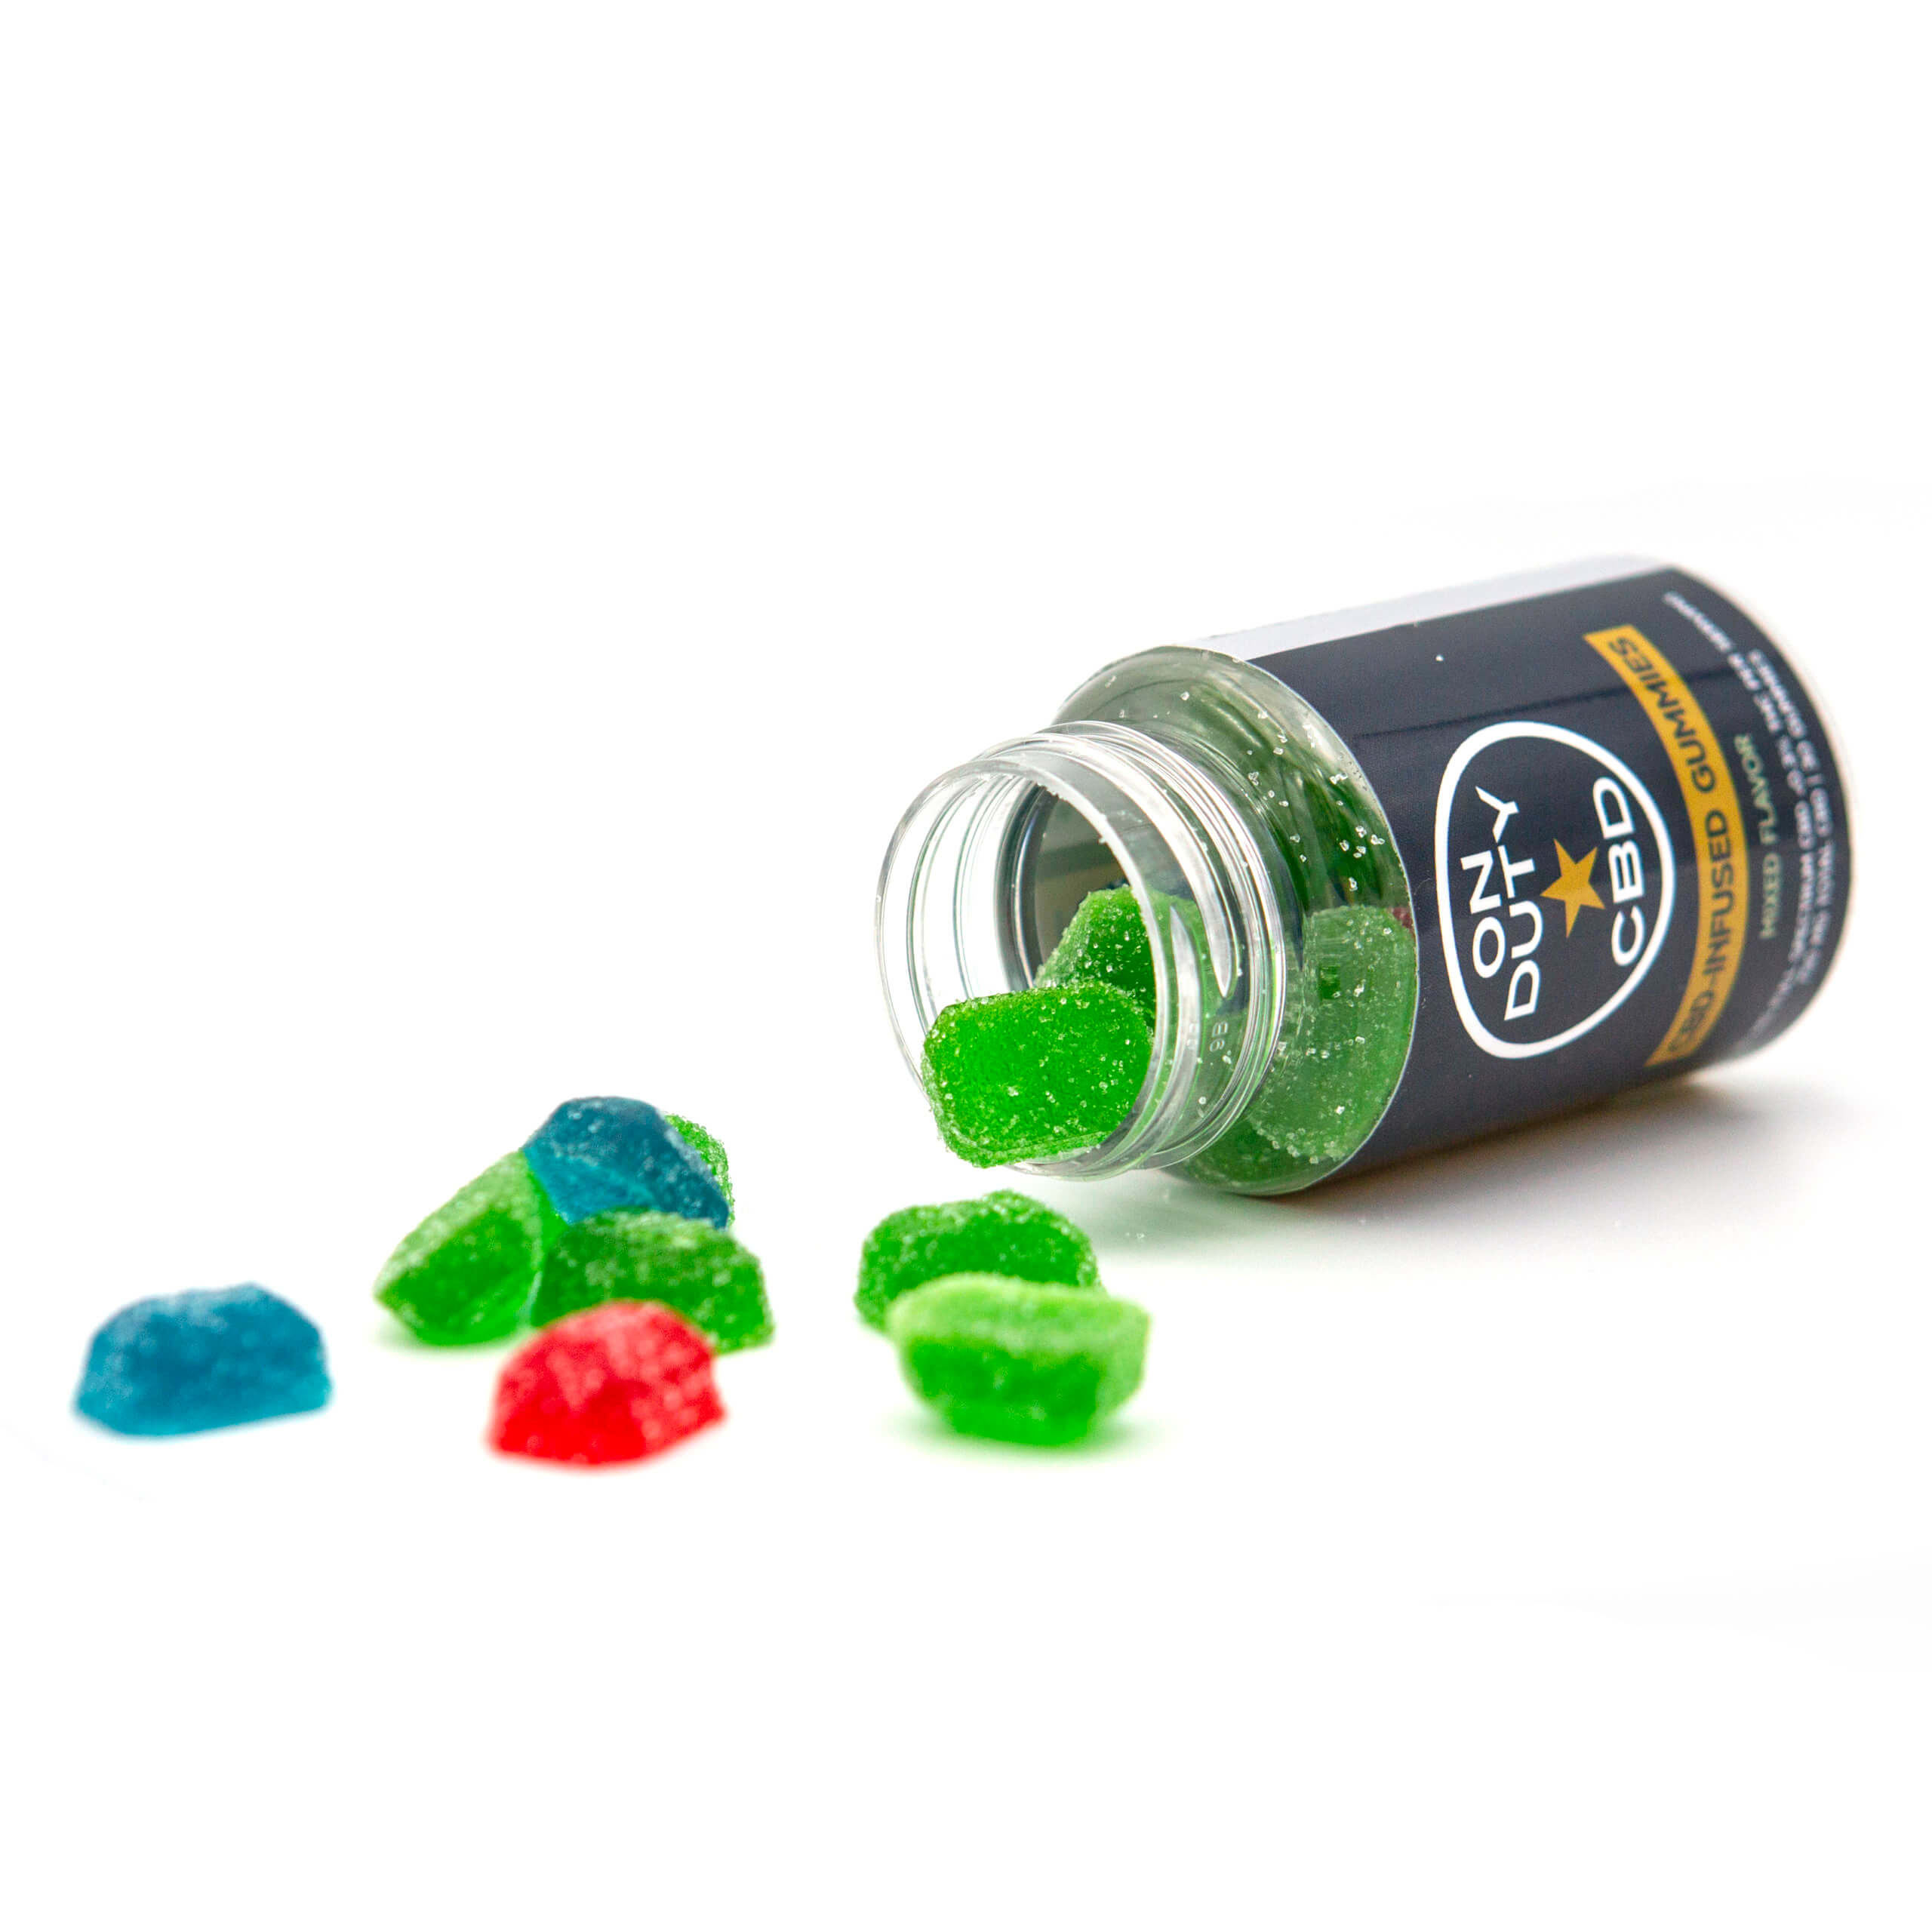 Full Spectrum CBD-Infused Gummies - On Duty USA